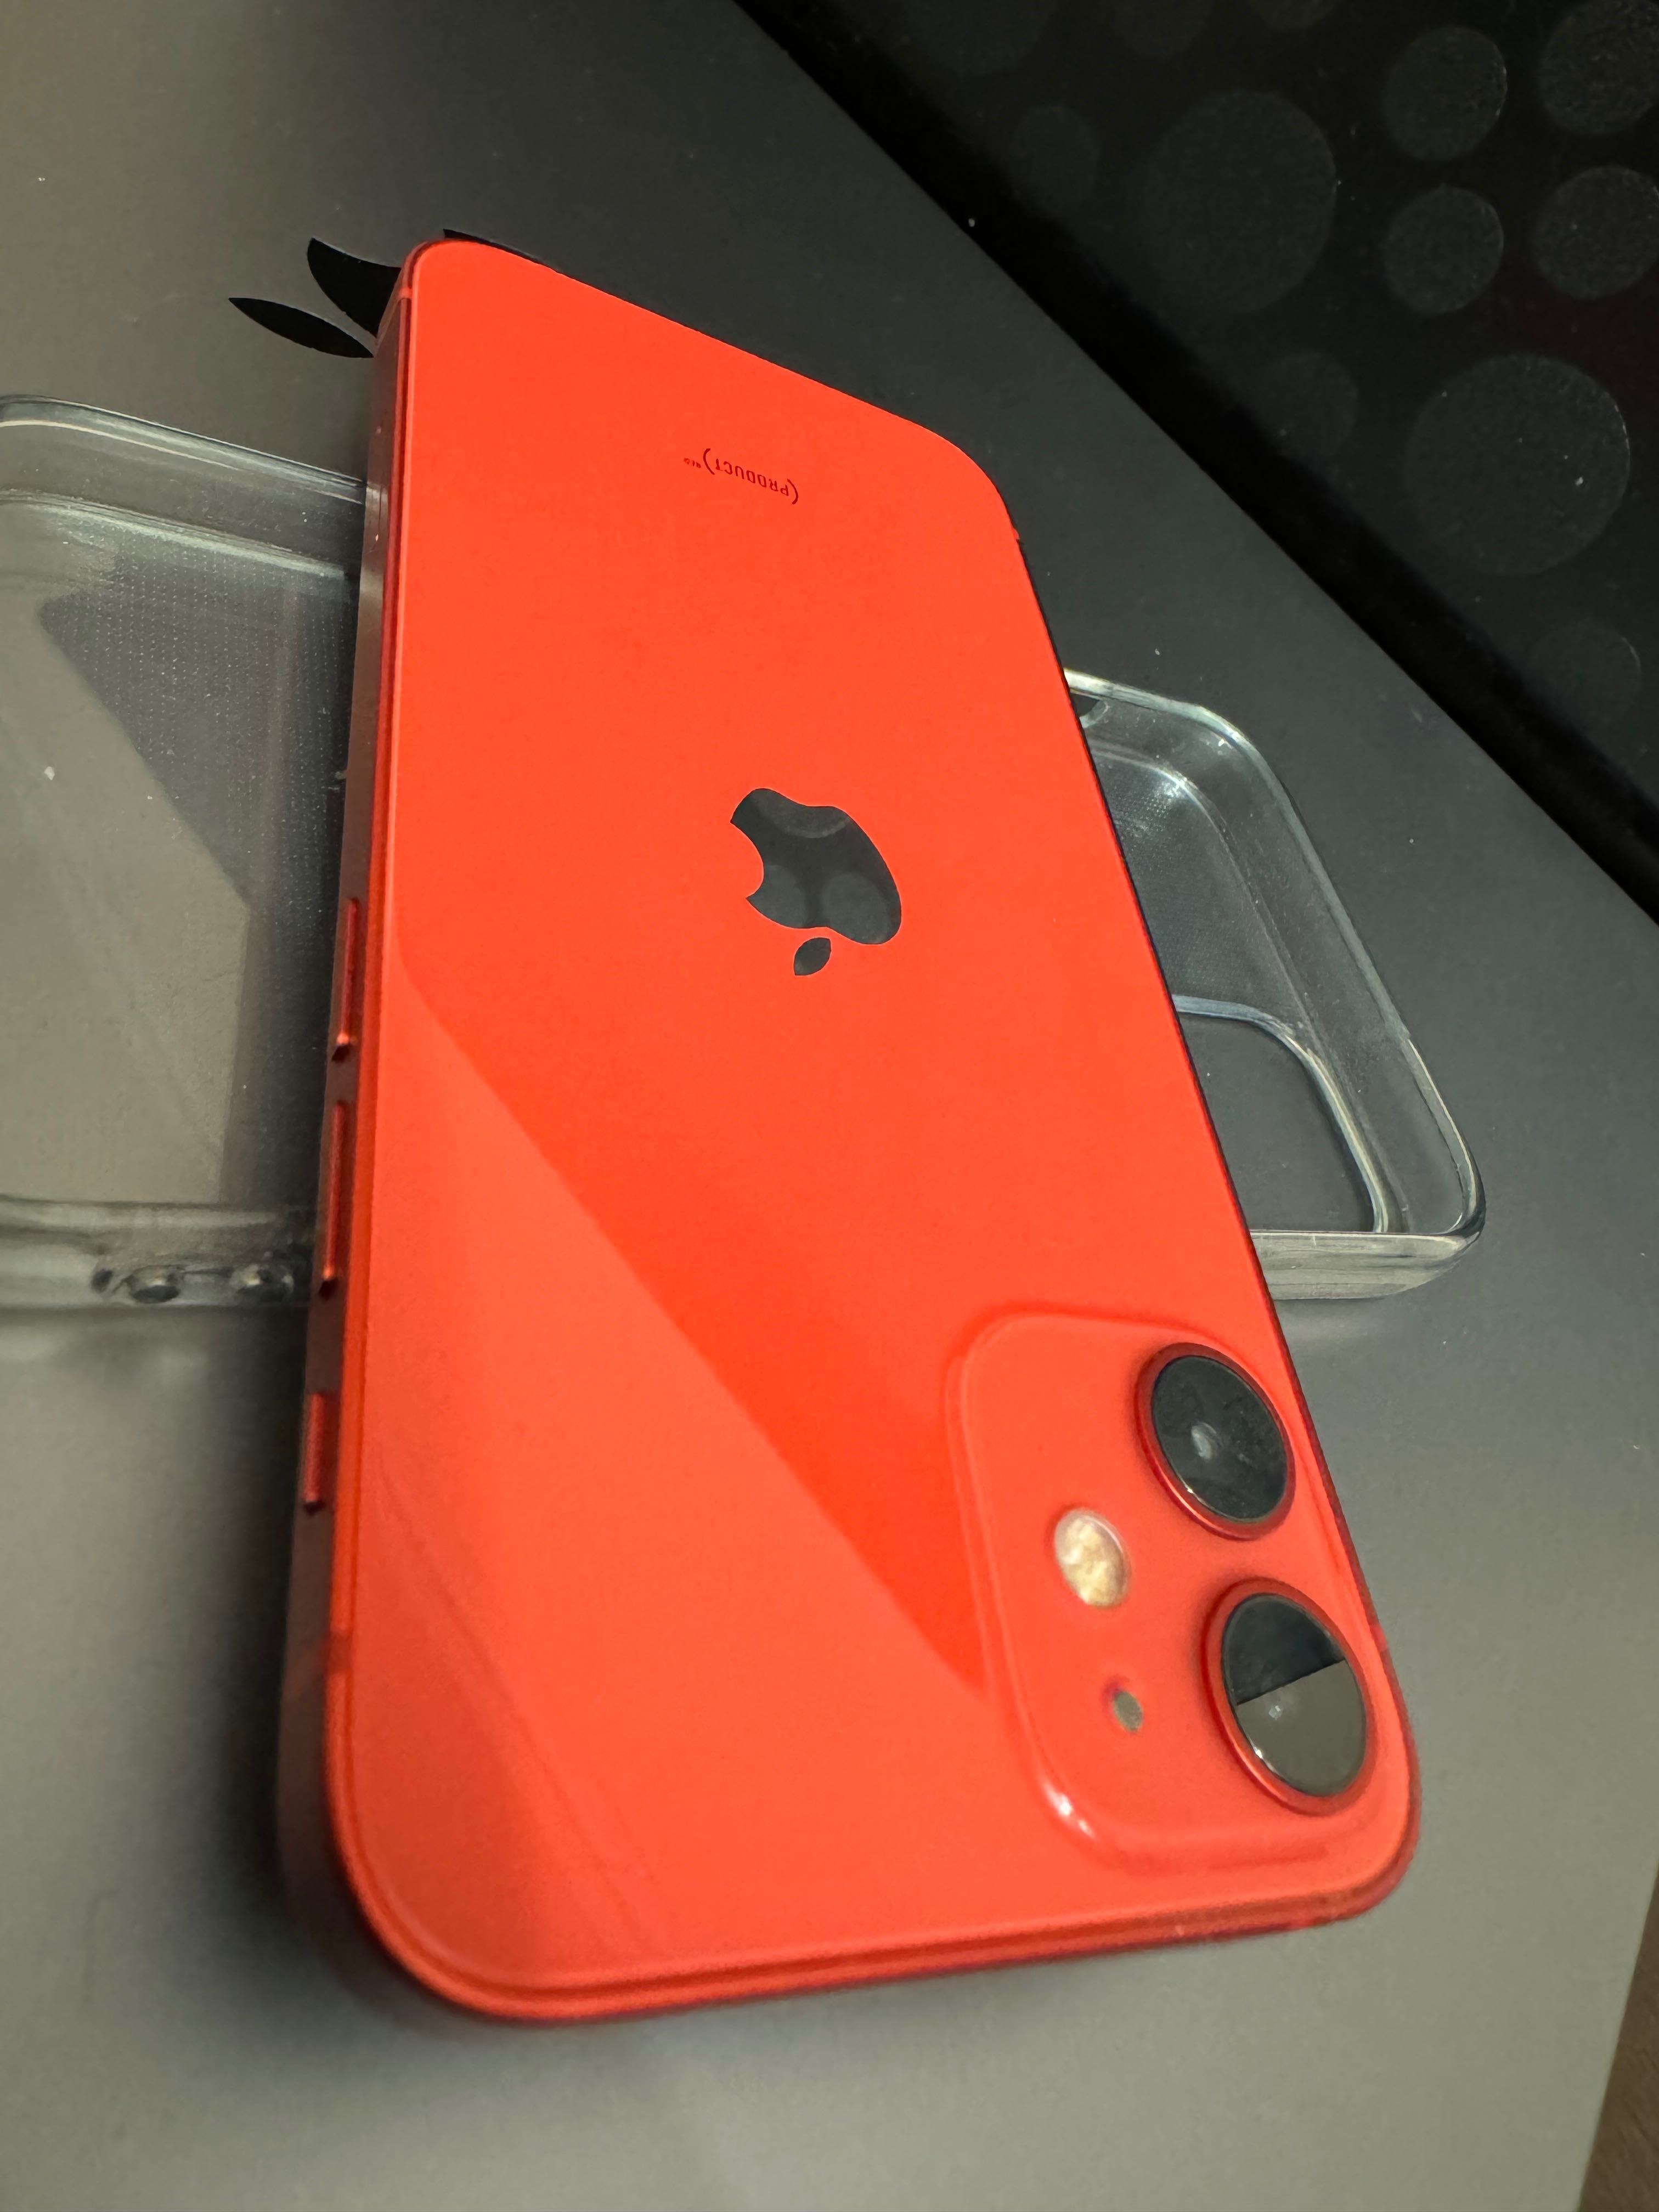 iPhone 12 mini 64GB Red